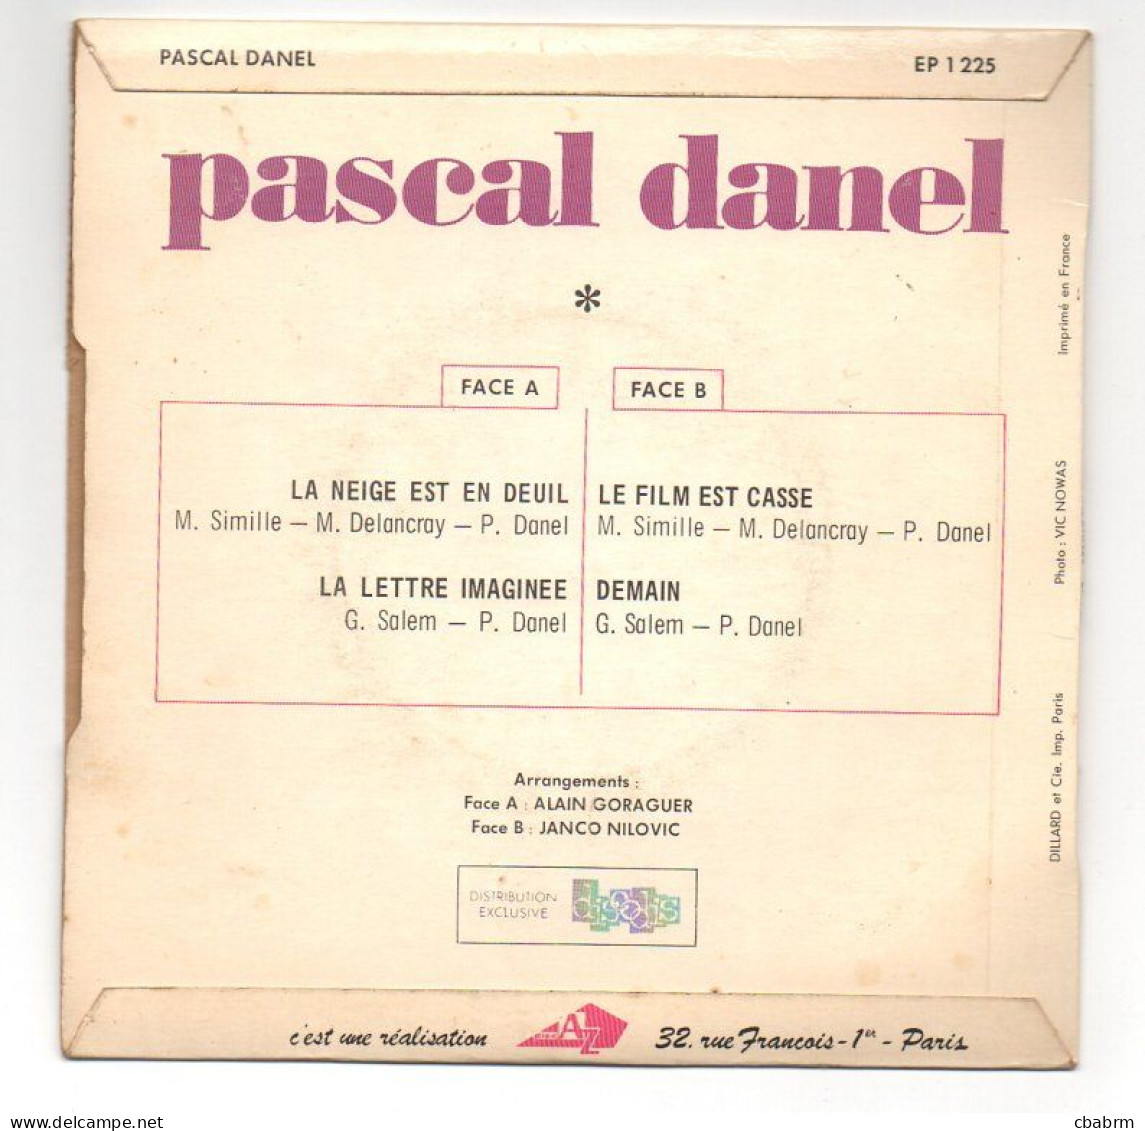 EP 45 TOURS PASCAL DANEL LA NEIGE EST EN DEUIL 1968 FRANCE Disc'Az ‎ EP 1225 - Autres - Musique Française